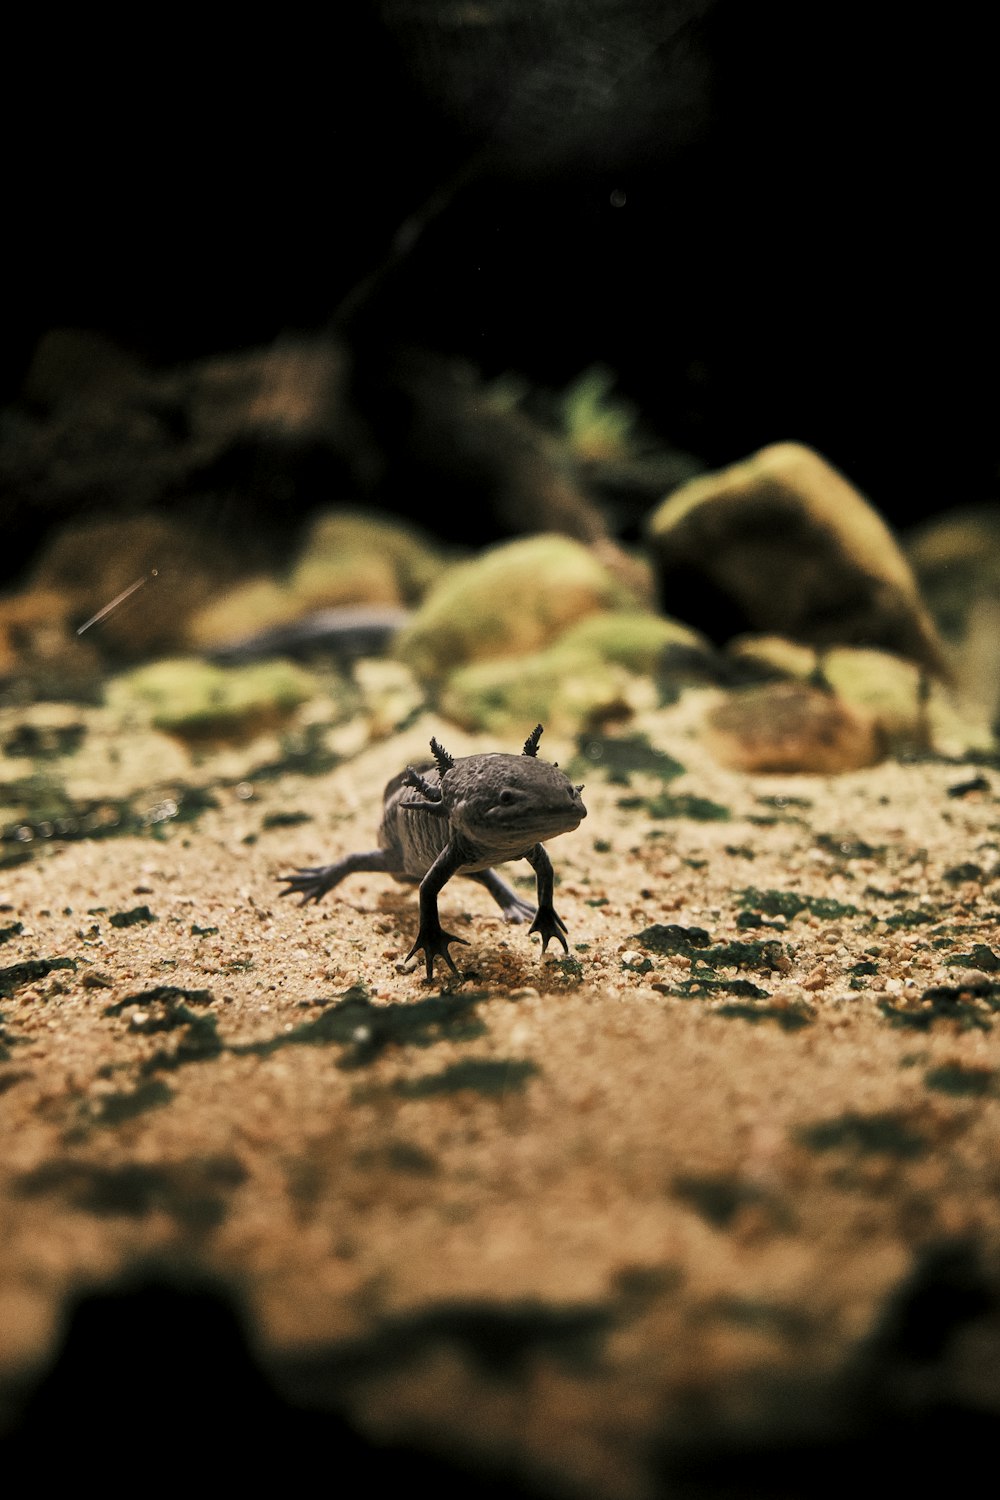 Un pequeño lagarto caminando por un campo de tierra